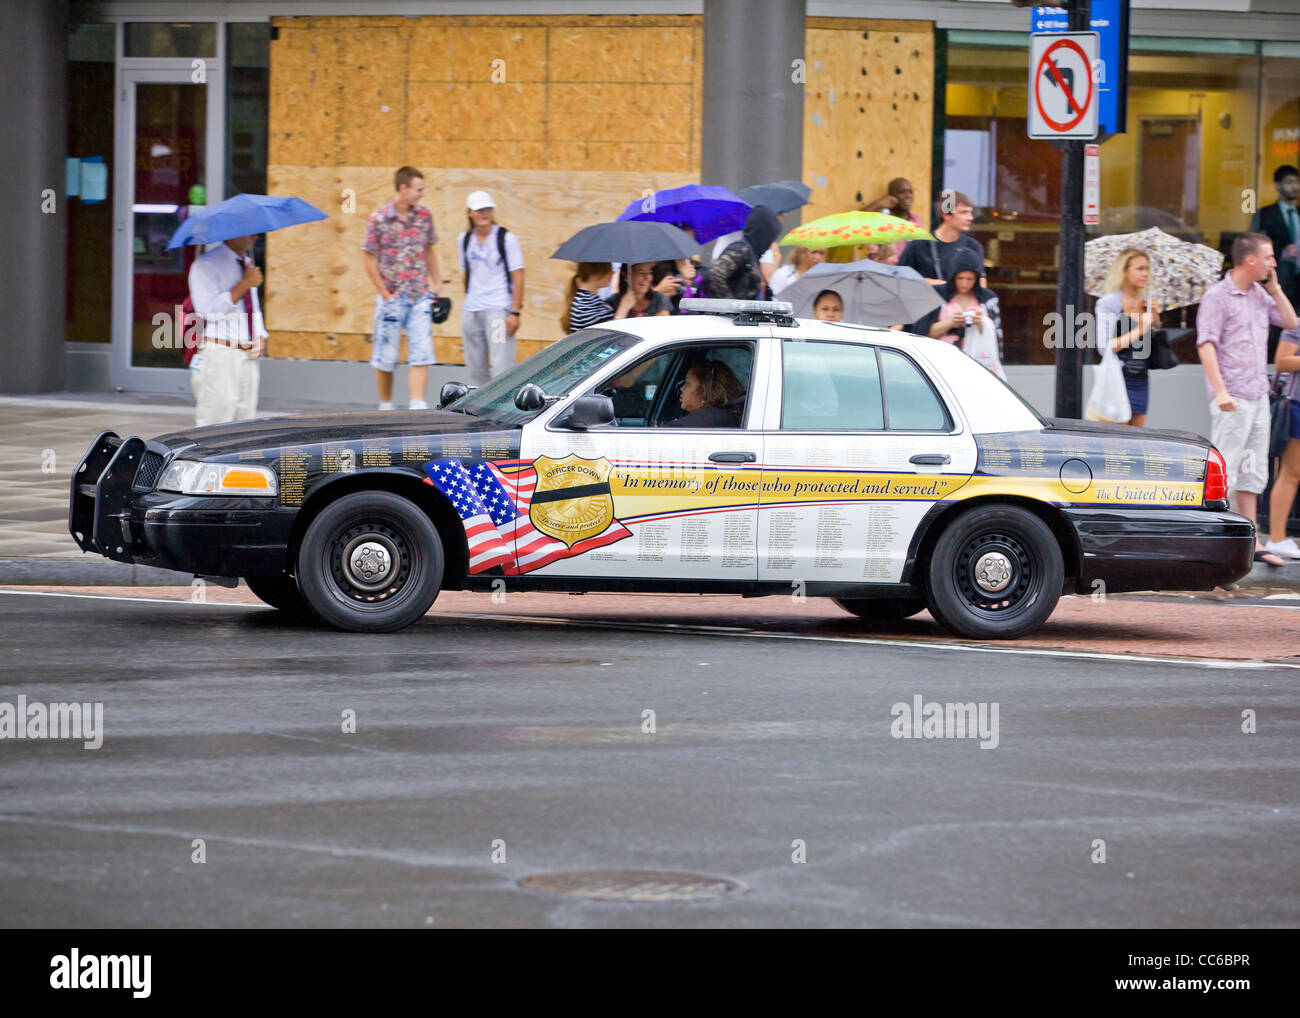 911 memorial police car - Washington, DC USA Stock Photo